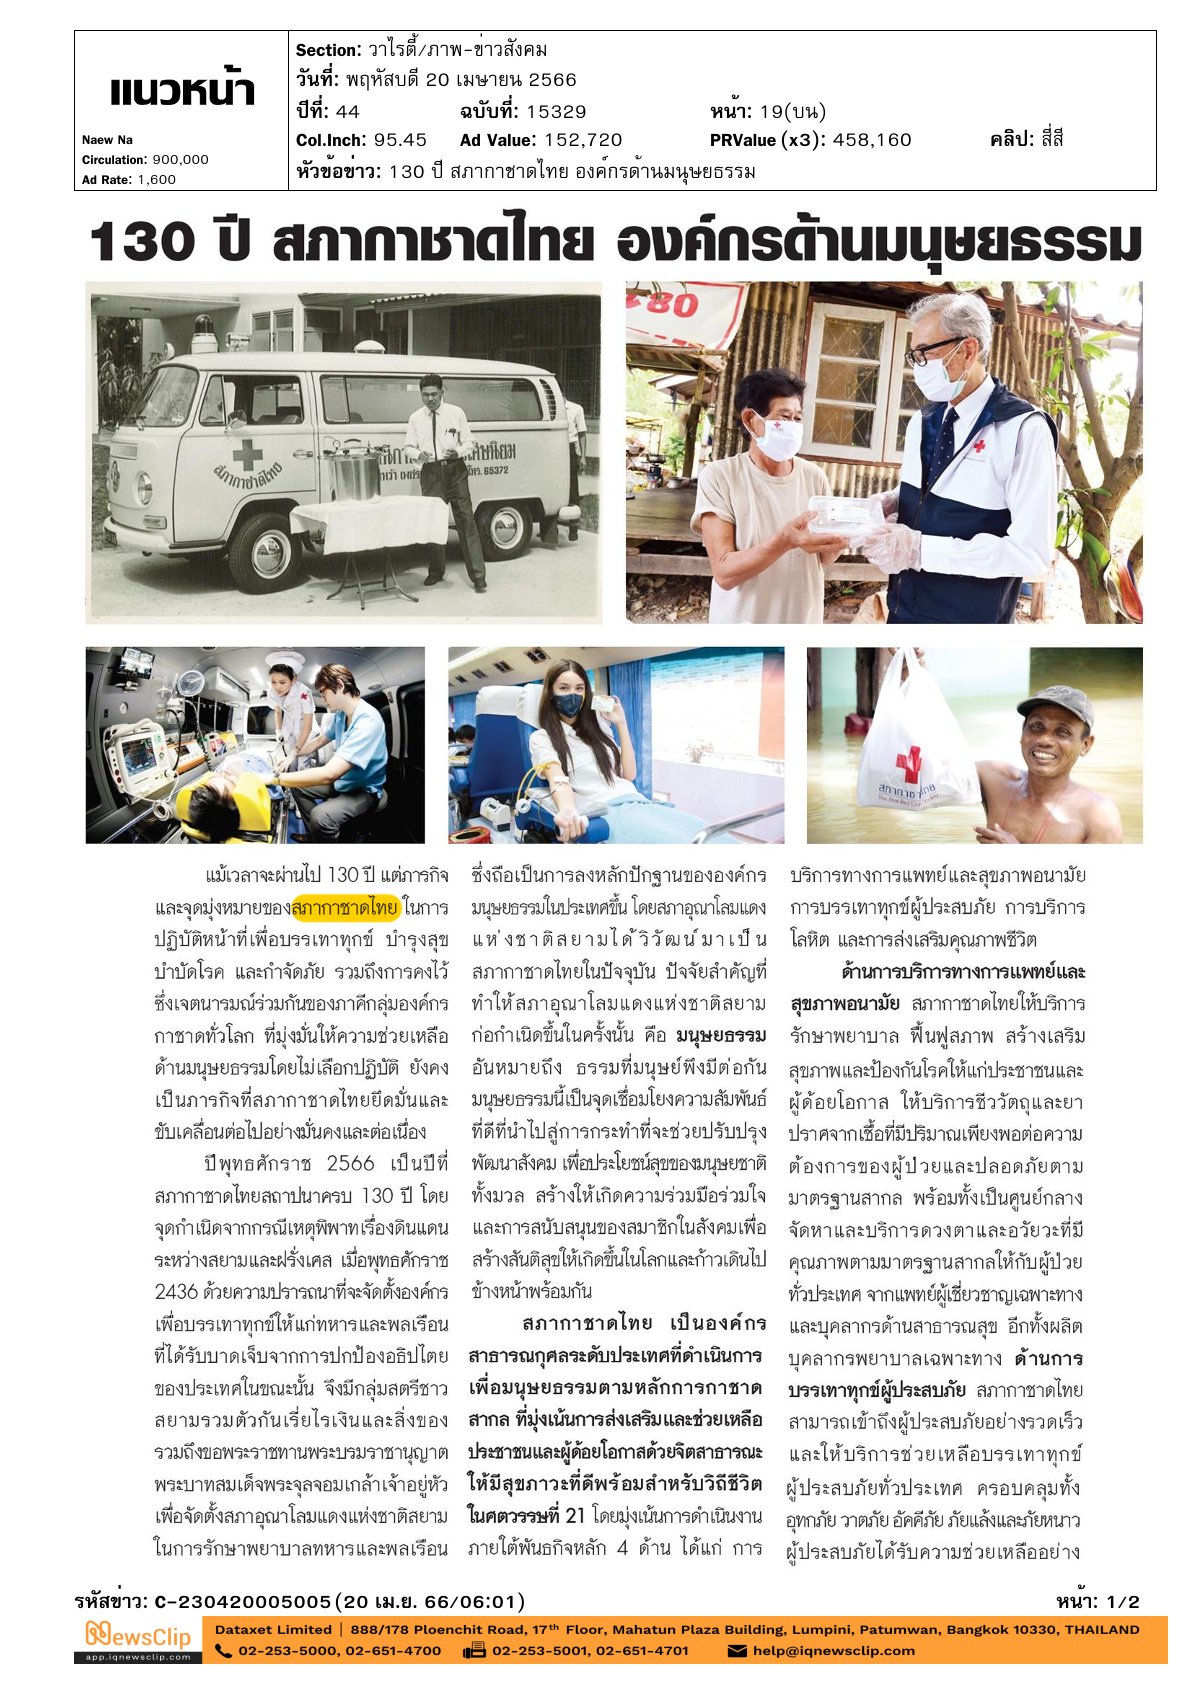 หัวข้อสกู๊ปข่าว : 130 ปี สภากาชาดไทย องค์กรด้านมนุษยธรรม